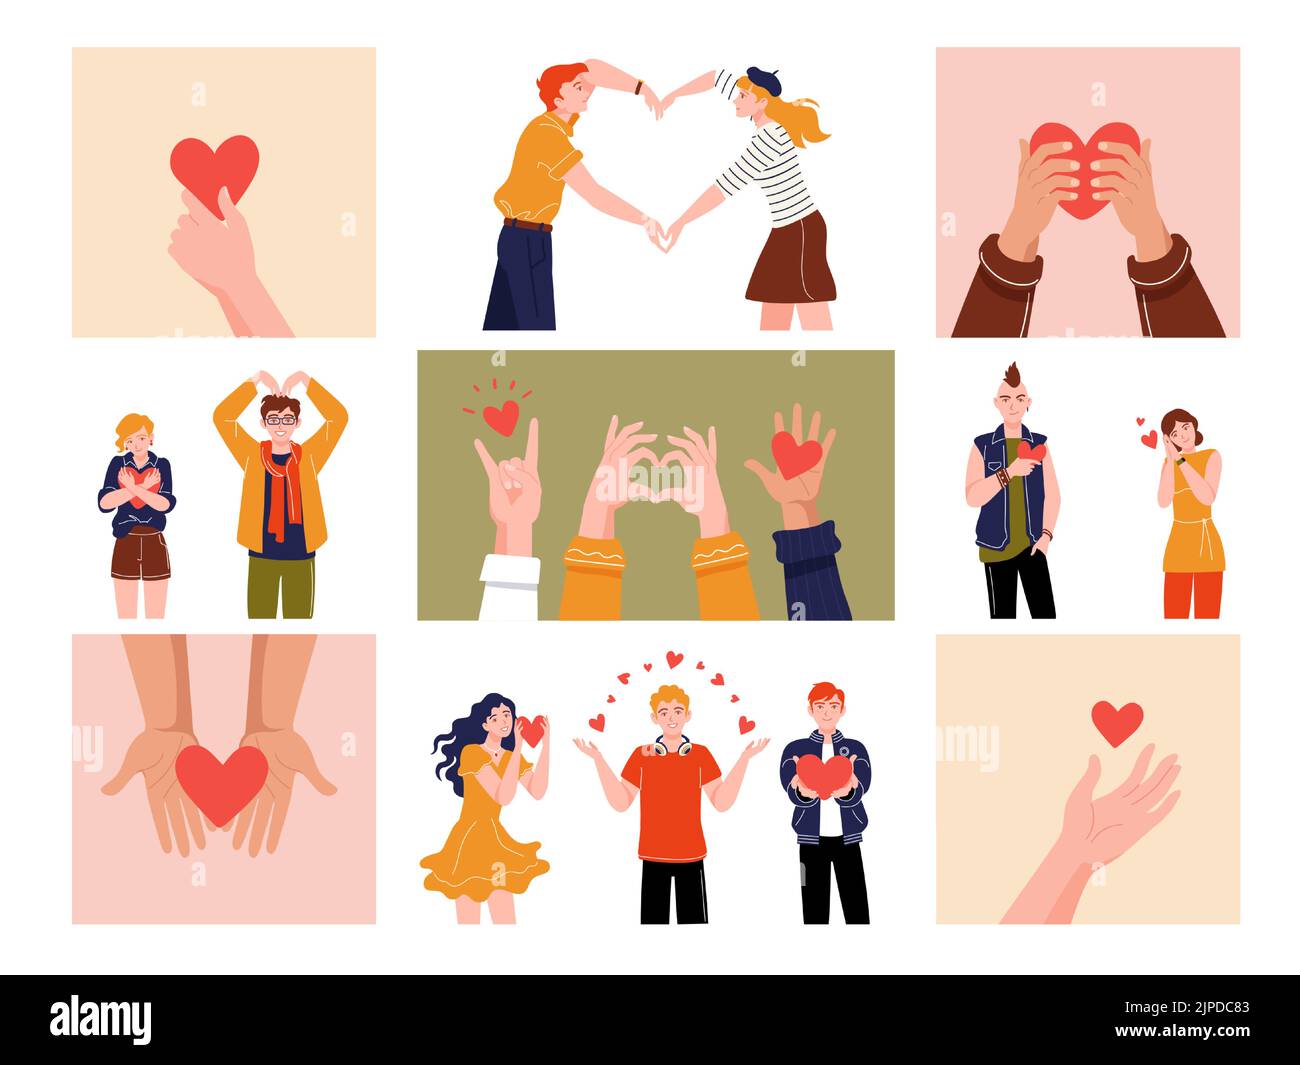 Hände mit Herzen. Cartoon-Unterstützung und Charity-Konzept mit menschlichen Händen und Figuren mit roten Herzen, Charity und Spende Grafik. Vektor Stock Vektor